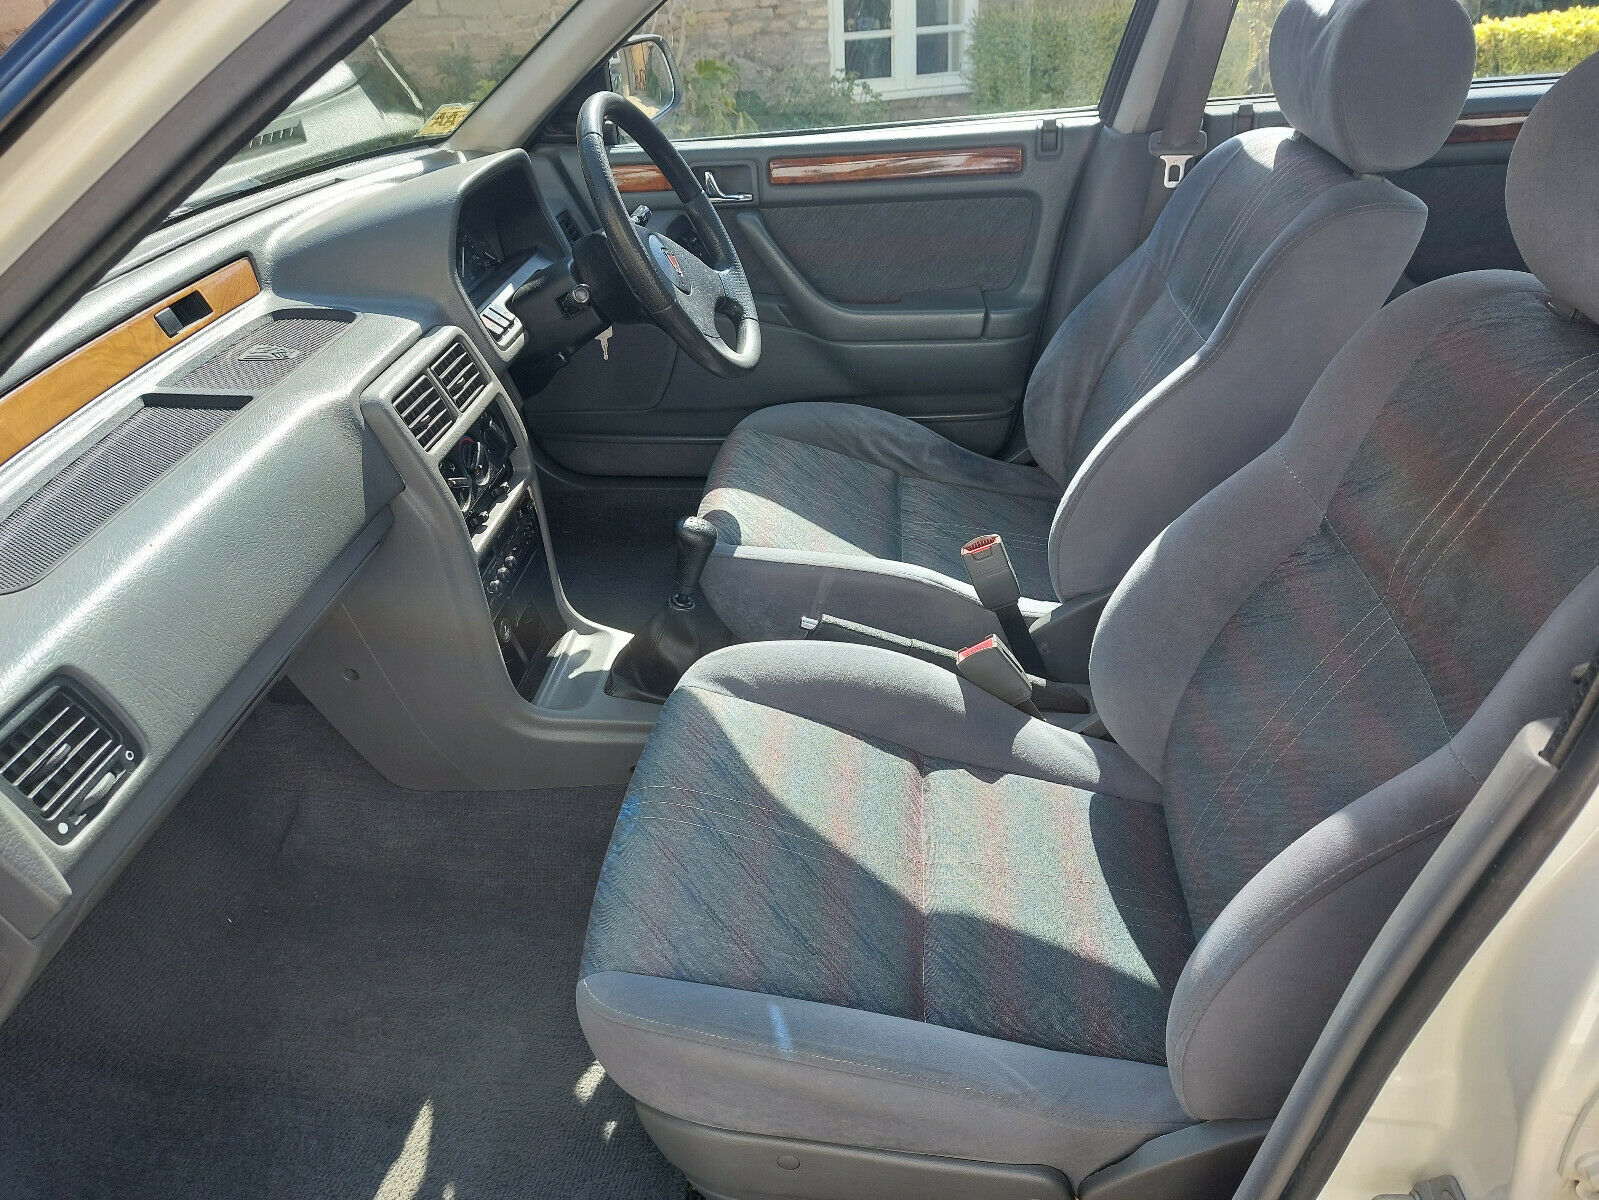 1993 Rover 214 interior